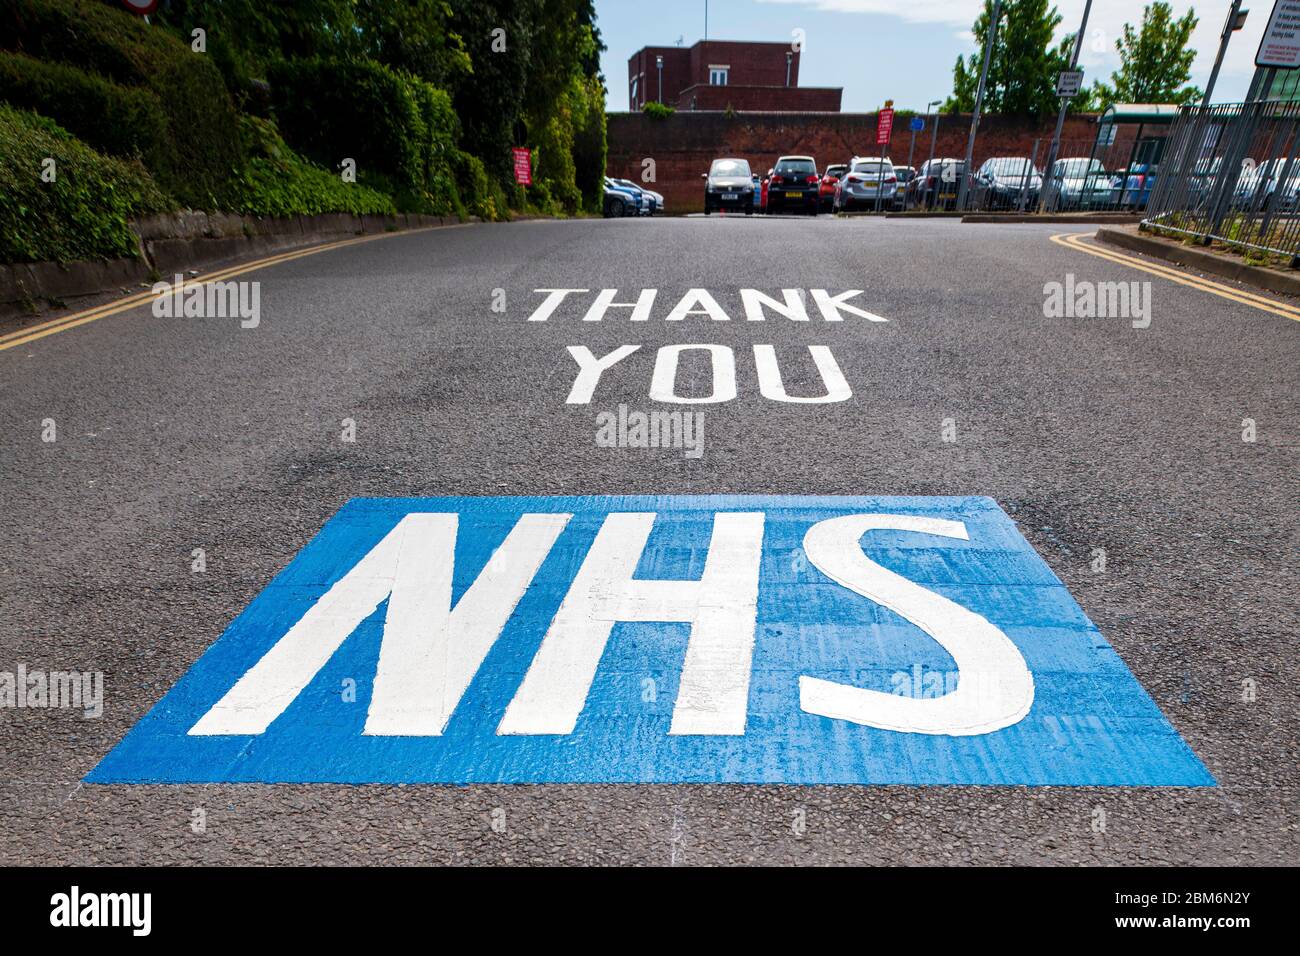 Merci NHS peint peinture de route Royaume-Uni. Message de soutien nos soignants à l'entrée d'un parking près de l'hôpital, Angleterre. Banque D'Images